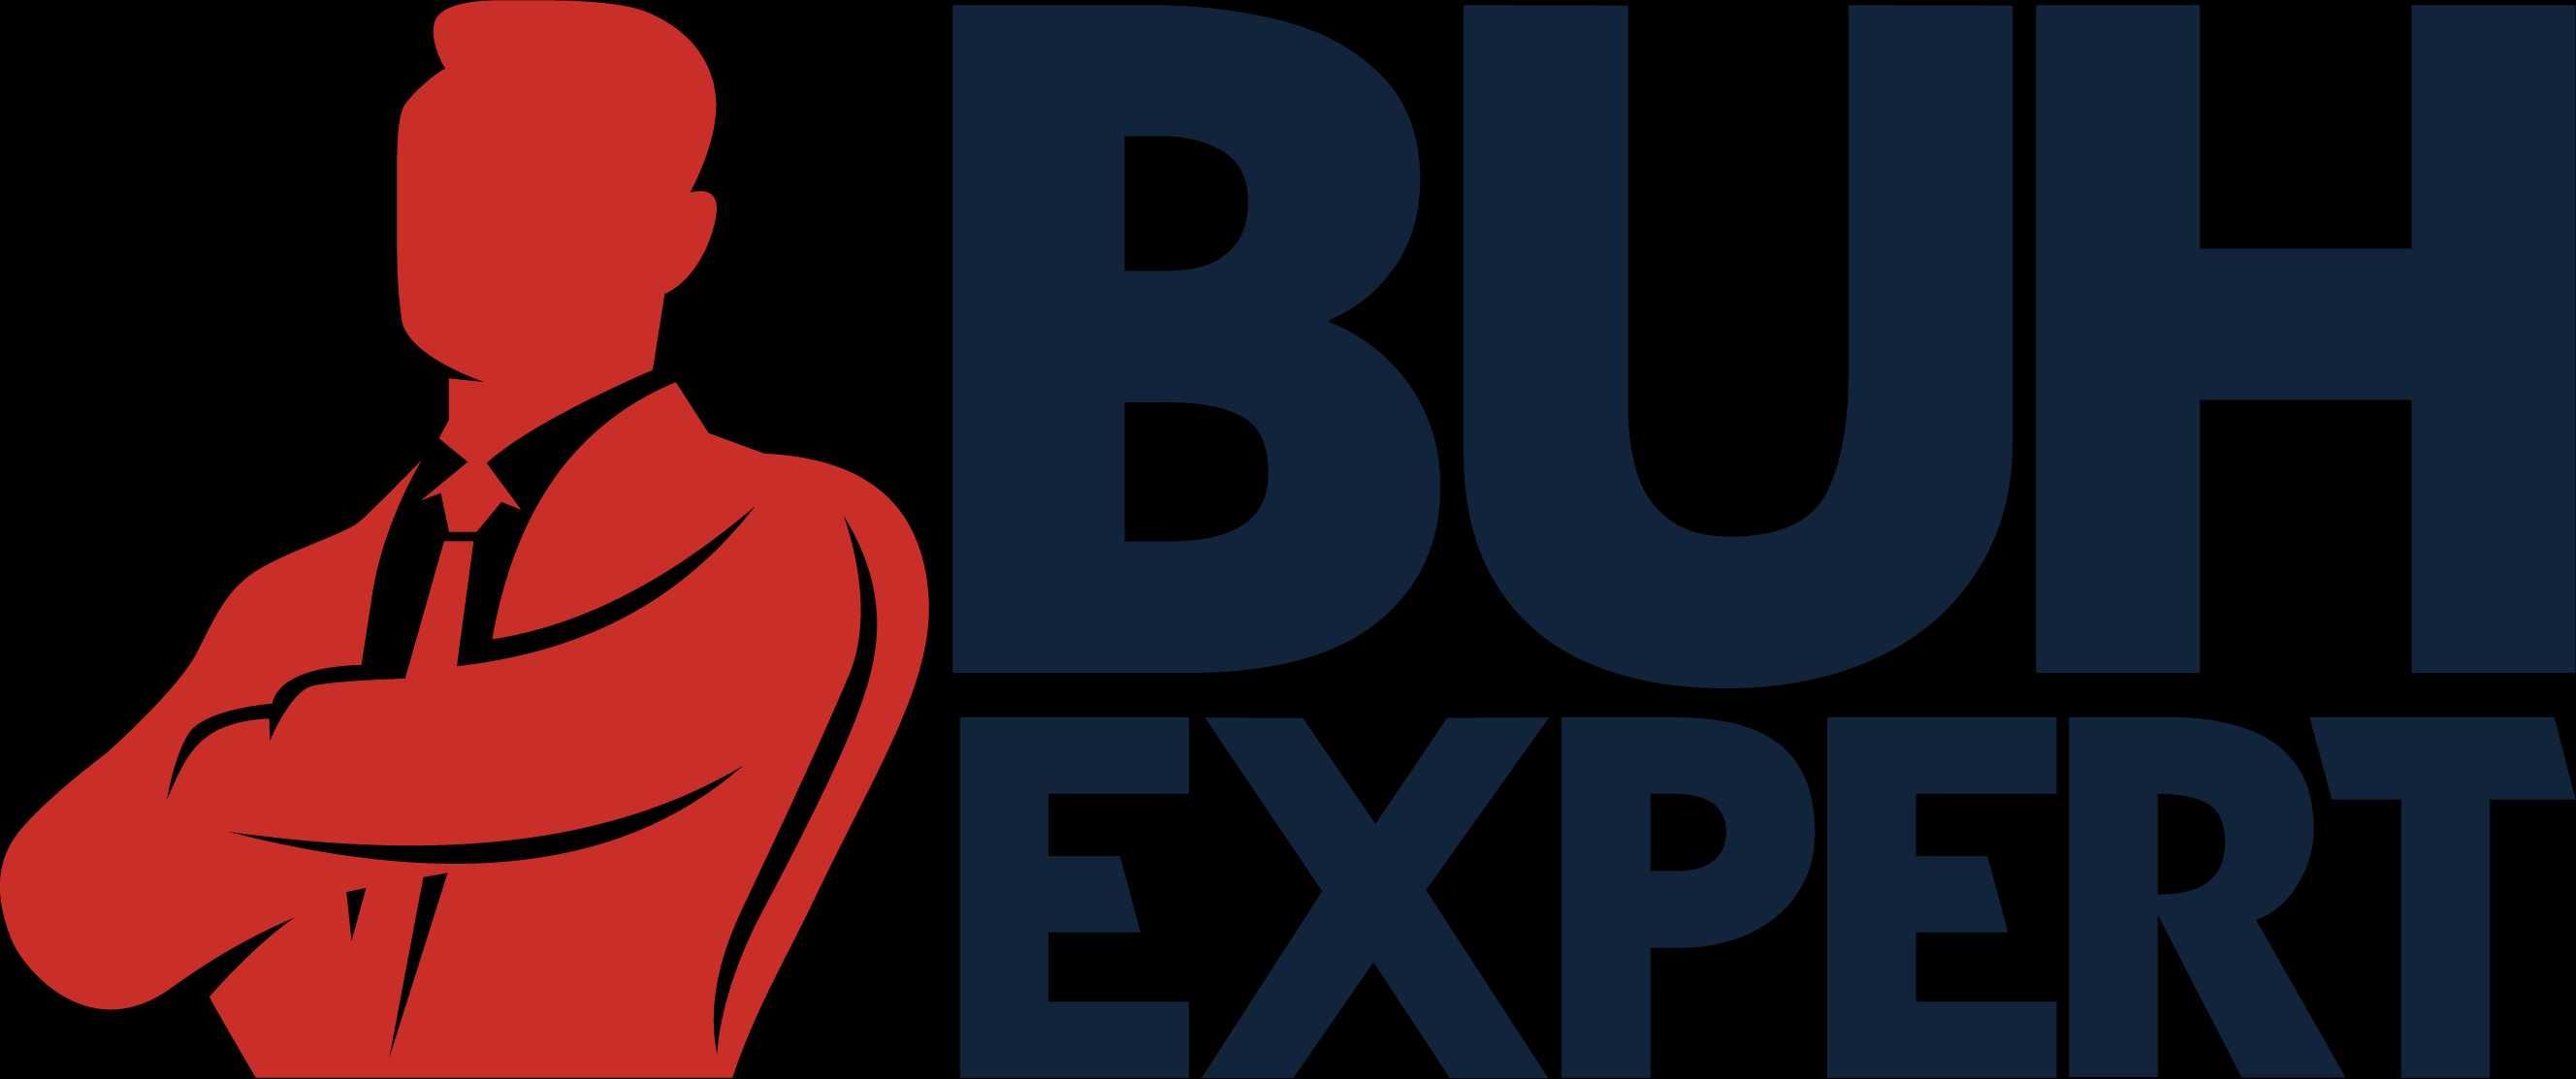 Бухгалтерские услуги и отчётность (аутсорсинг) от buhexpert